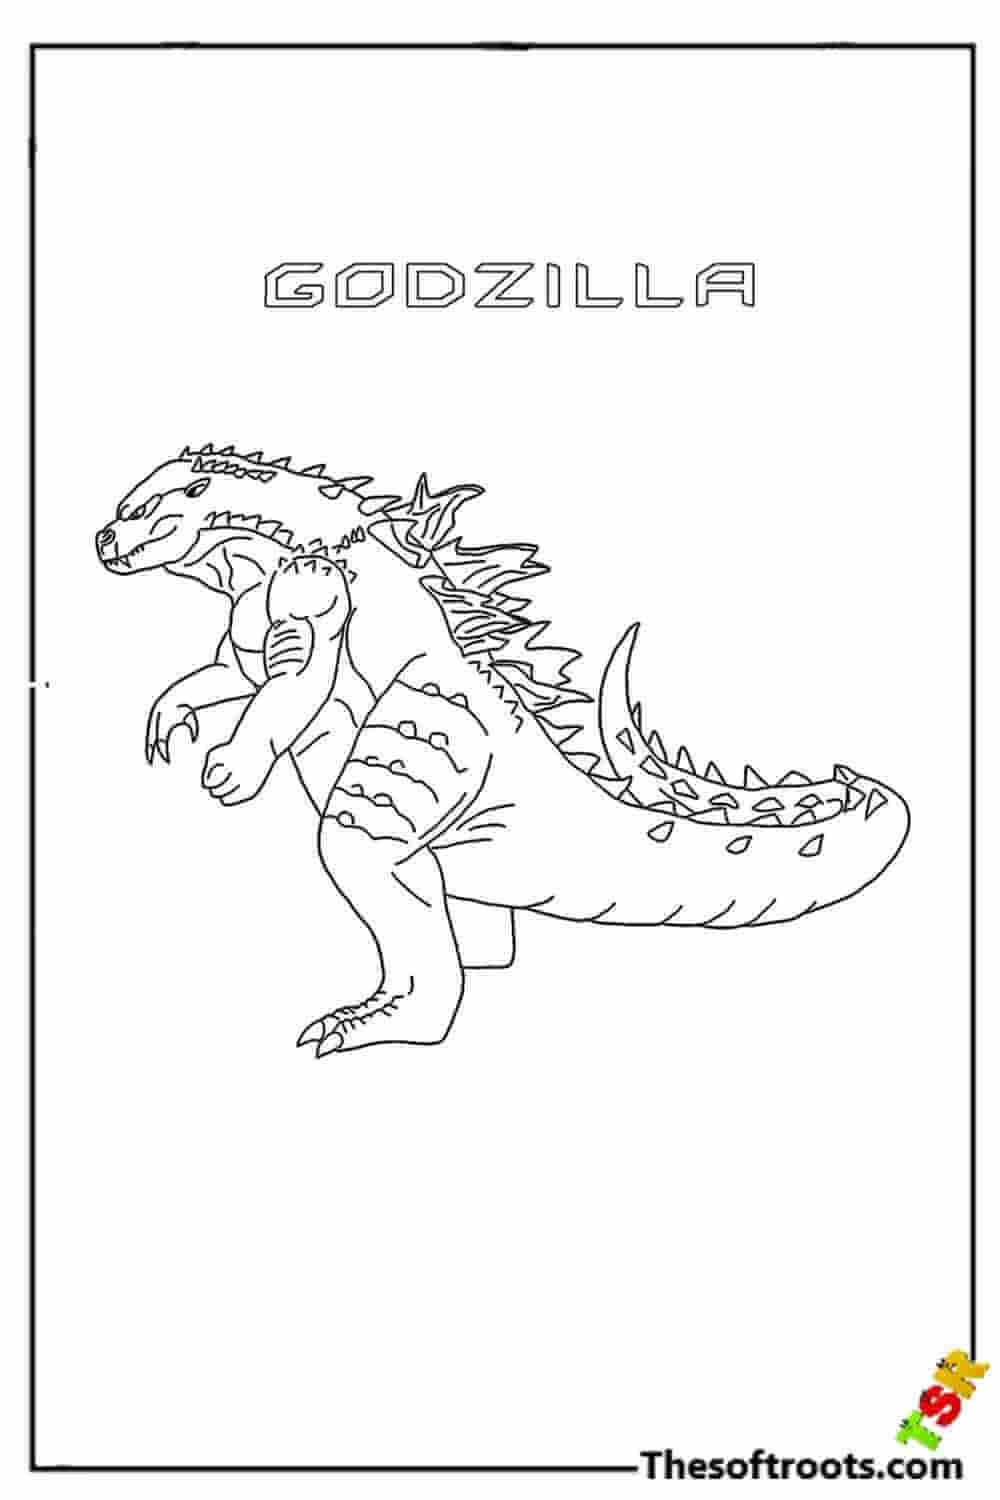 Big Godzilla coloring pages